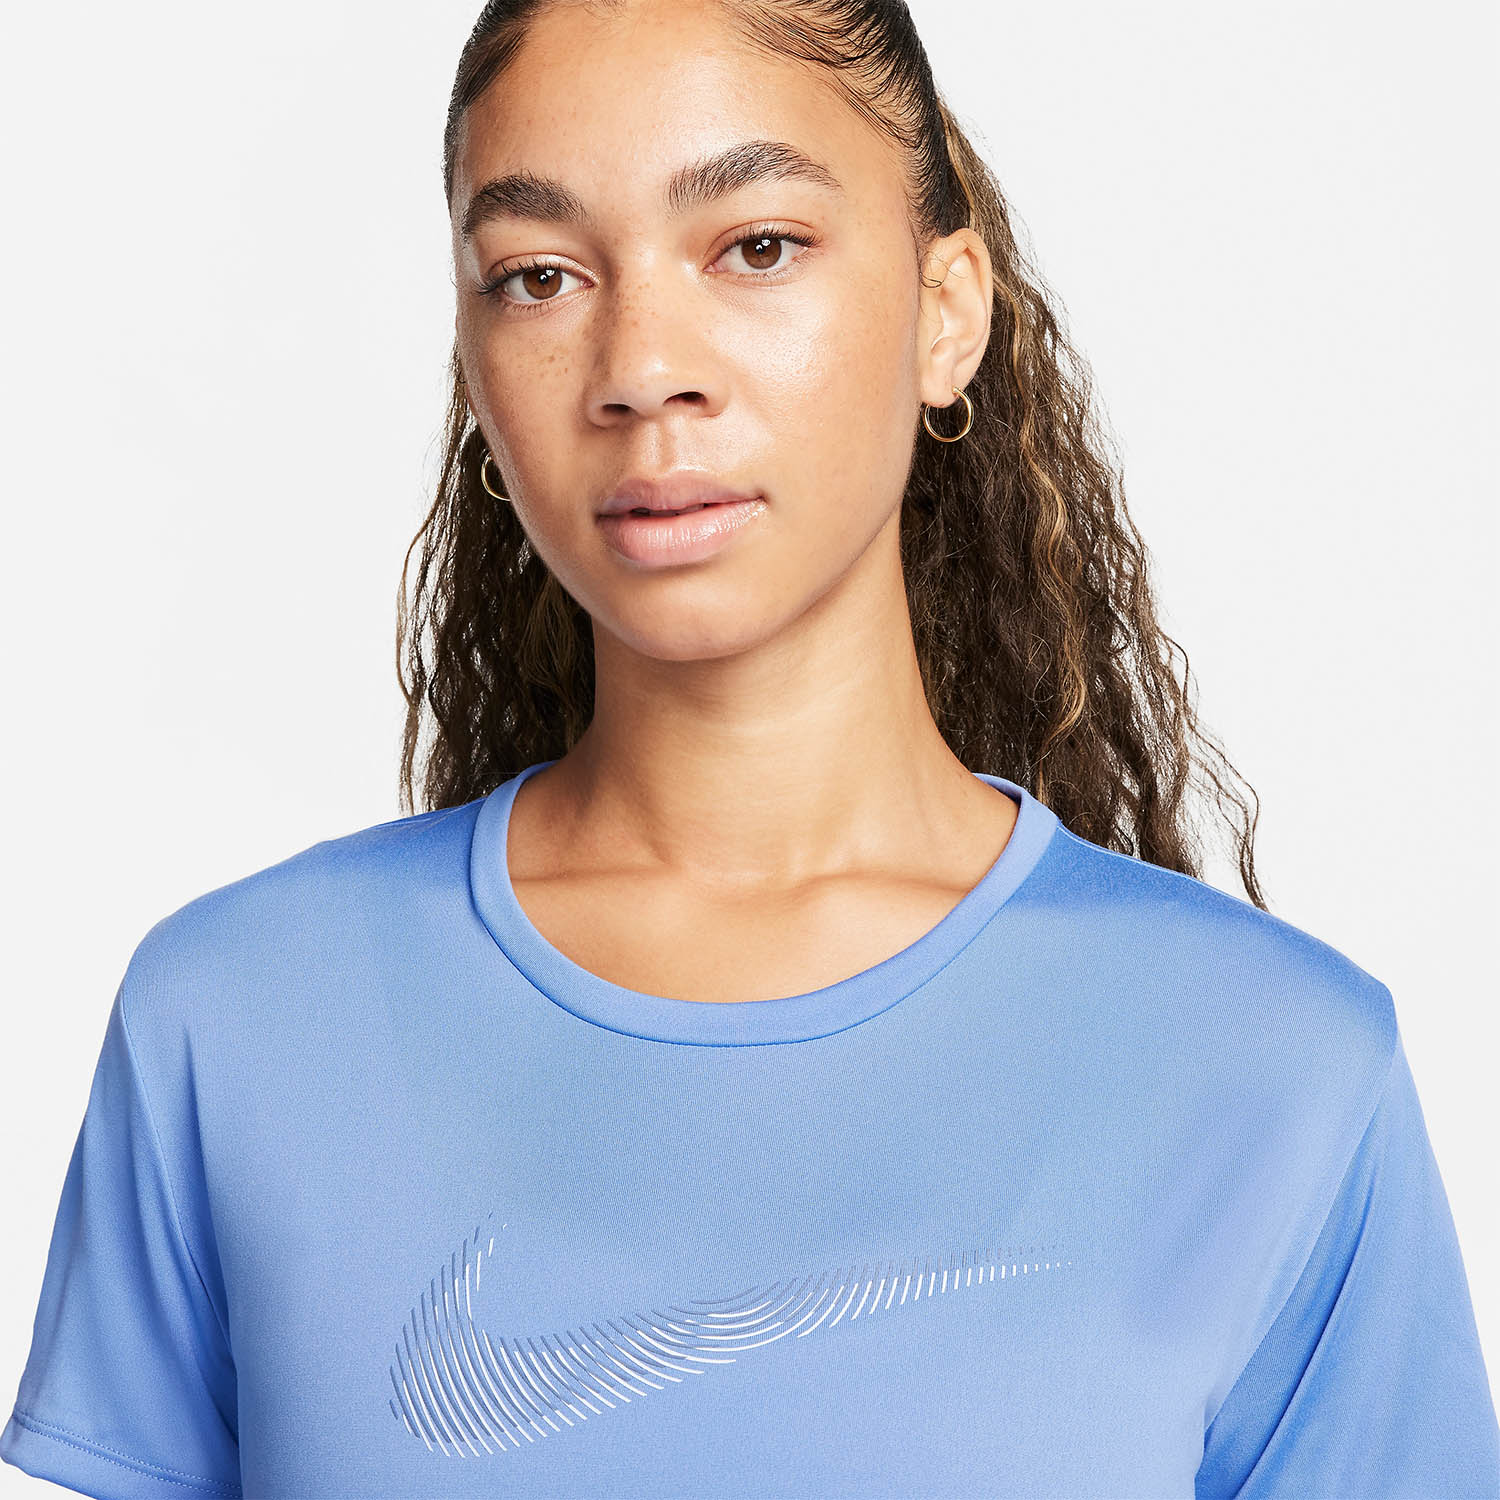 Nike Dri-FIT Swoosh T-Shirt - Polar/Diffused Blue